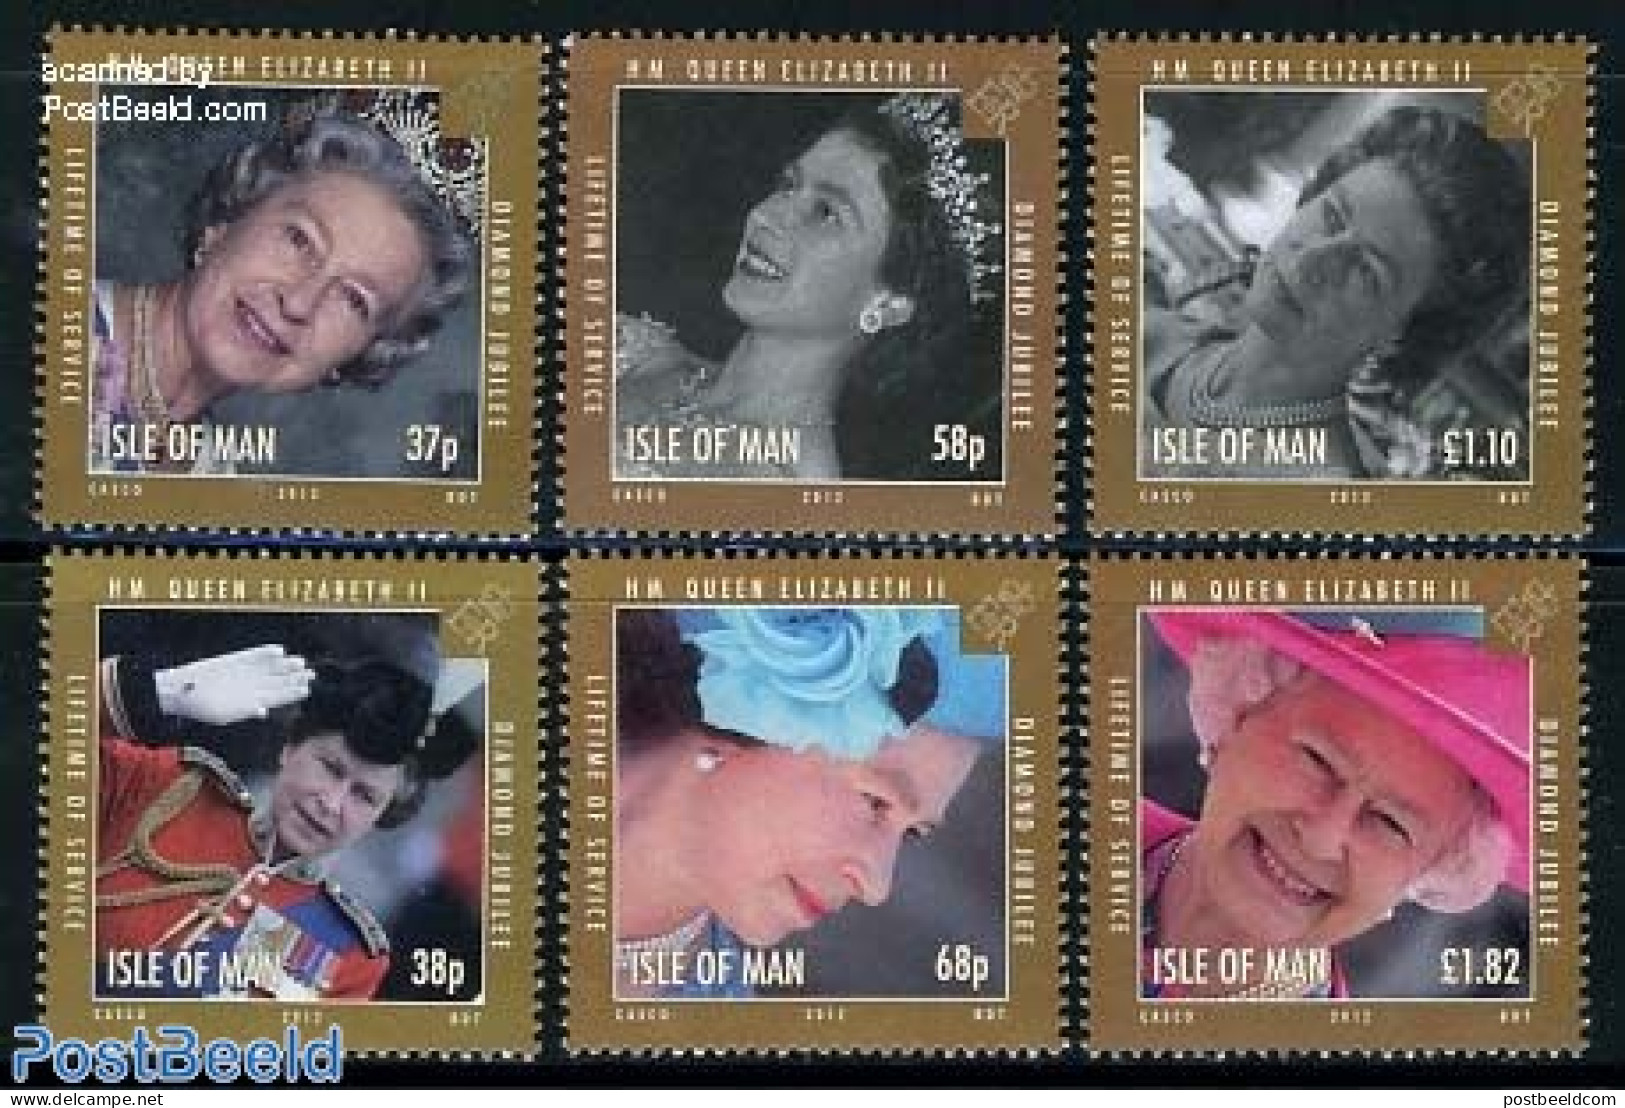 Isle Of Man 2012 Diamond Jubilee Elizabeth II 6v, Mint NH, History - Kings & Queens (Royalty) - Royalties, Royals